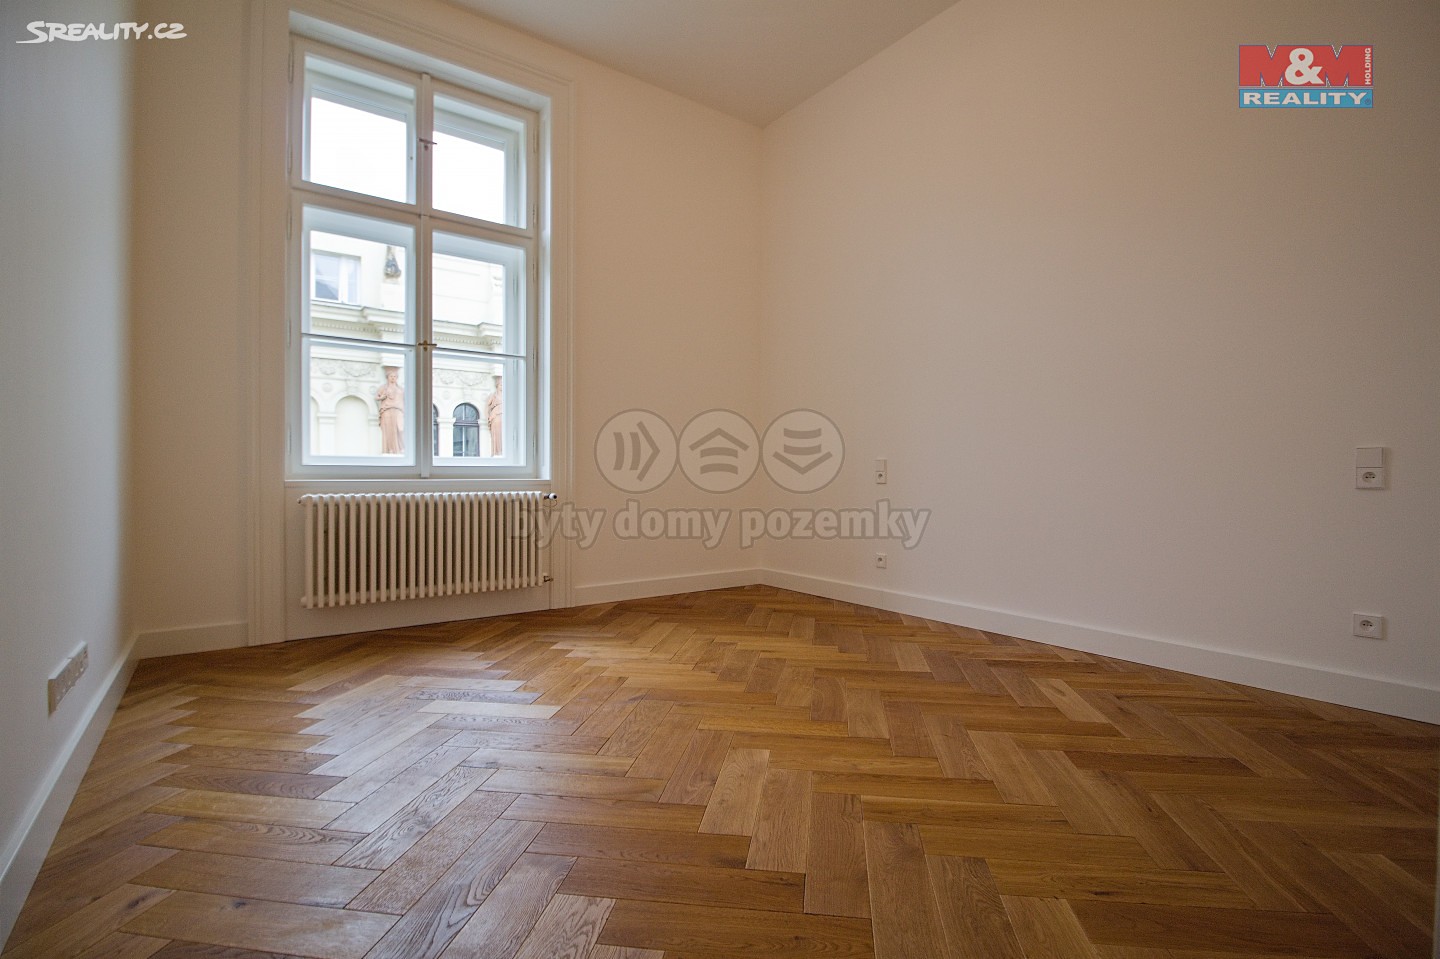 Prodej bytu 2+kk 75 m², Dlážděná, Praha 1 - Nové Město